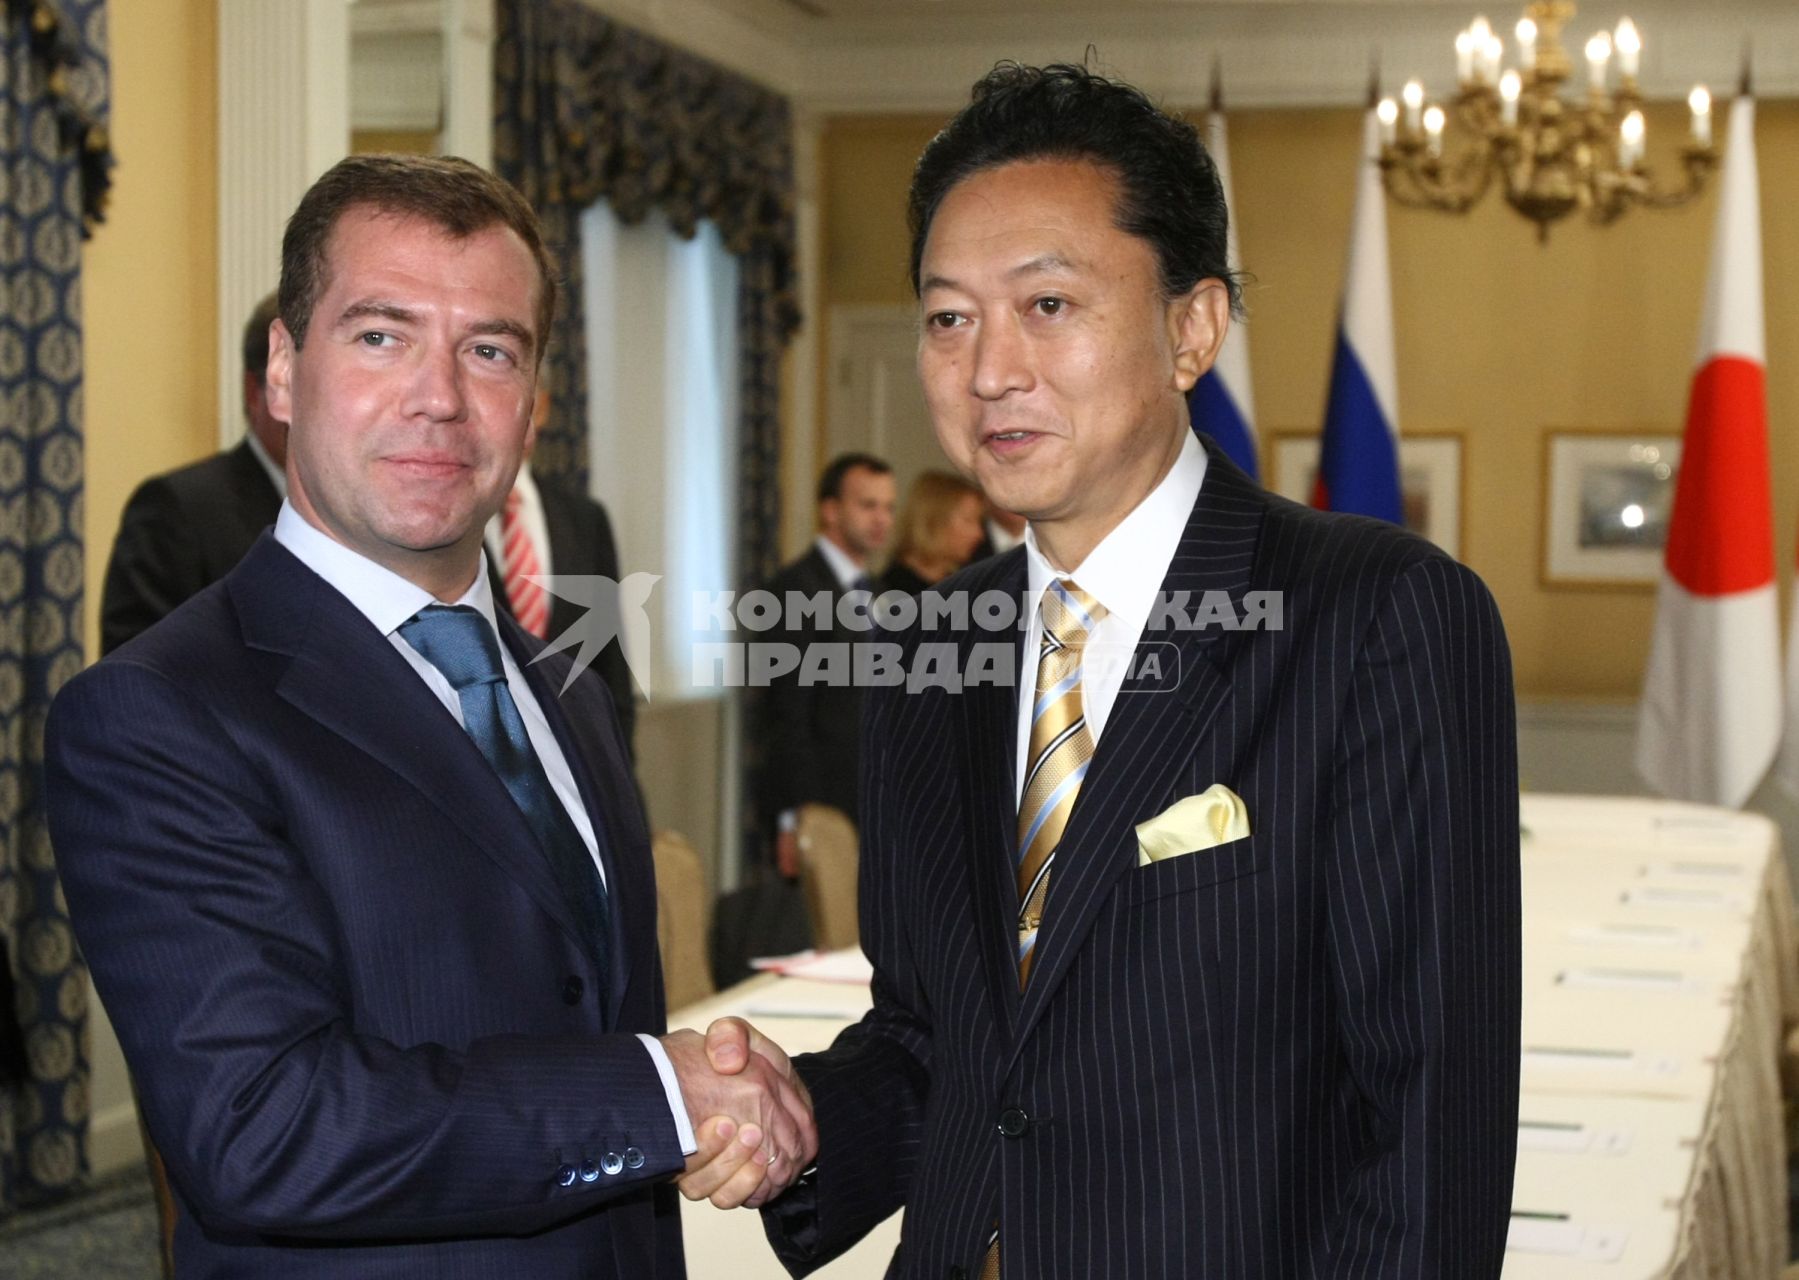 Встреча с новым Премьер-министром Японии. Дмитрий Медведев и Юкио Хатояма.